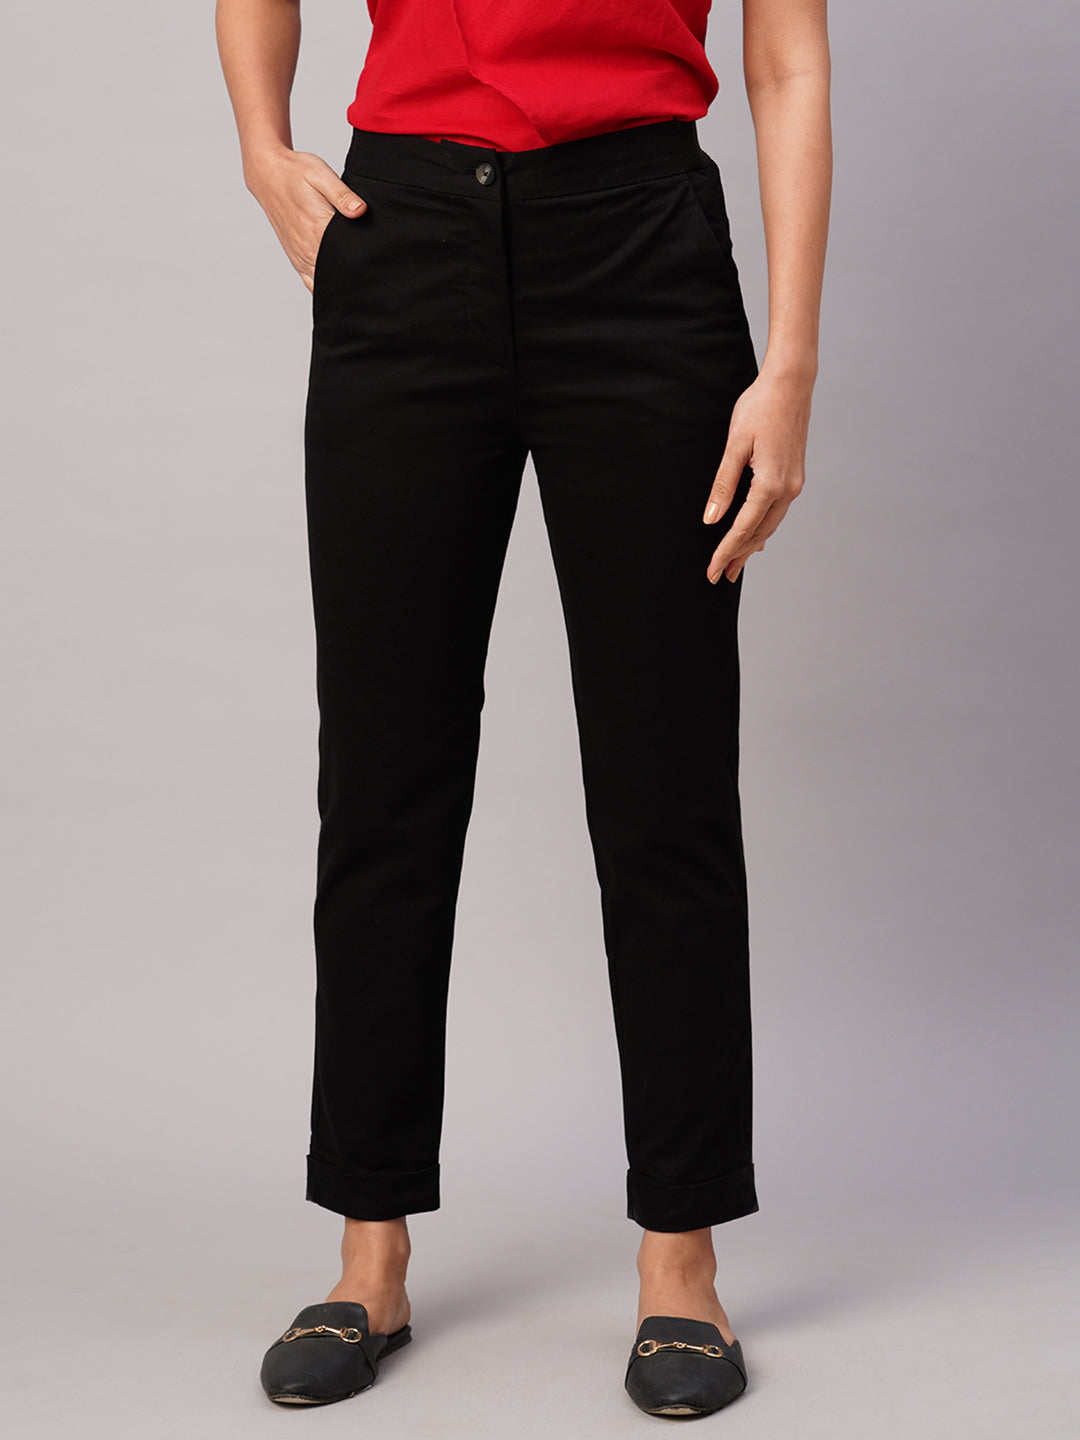 Women's Cotton Lycra Black Slim Fit Pant